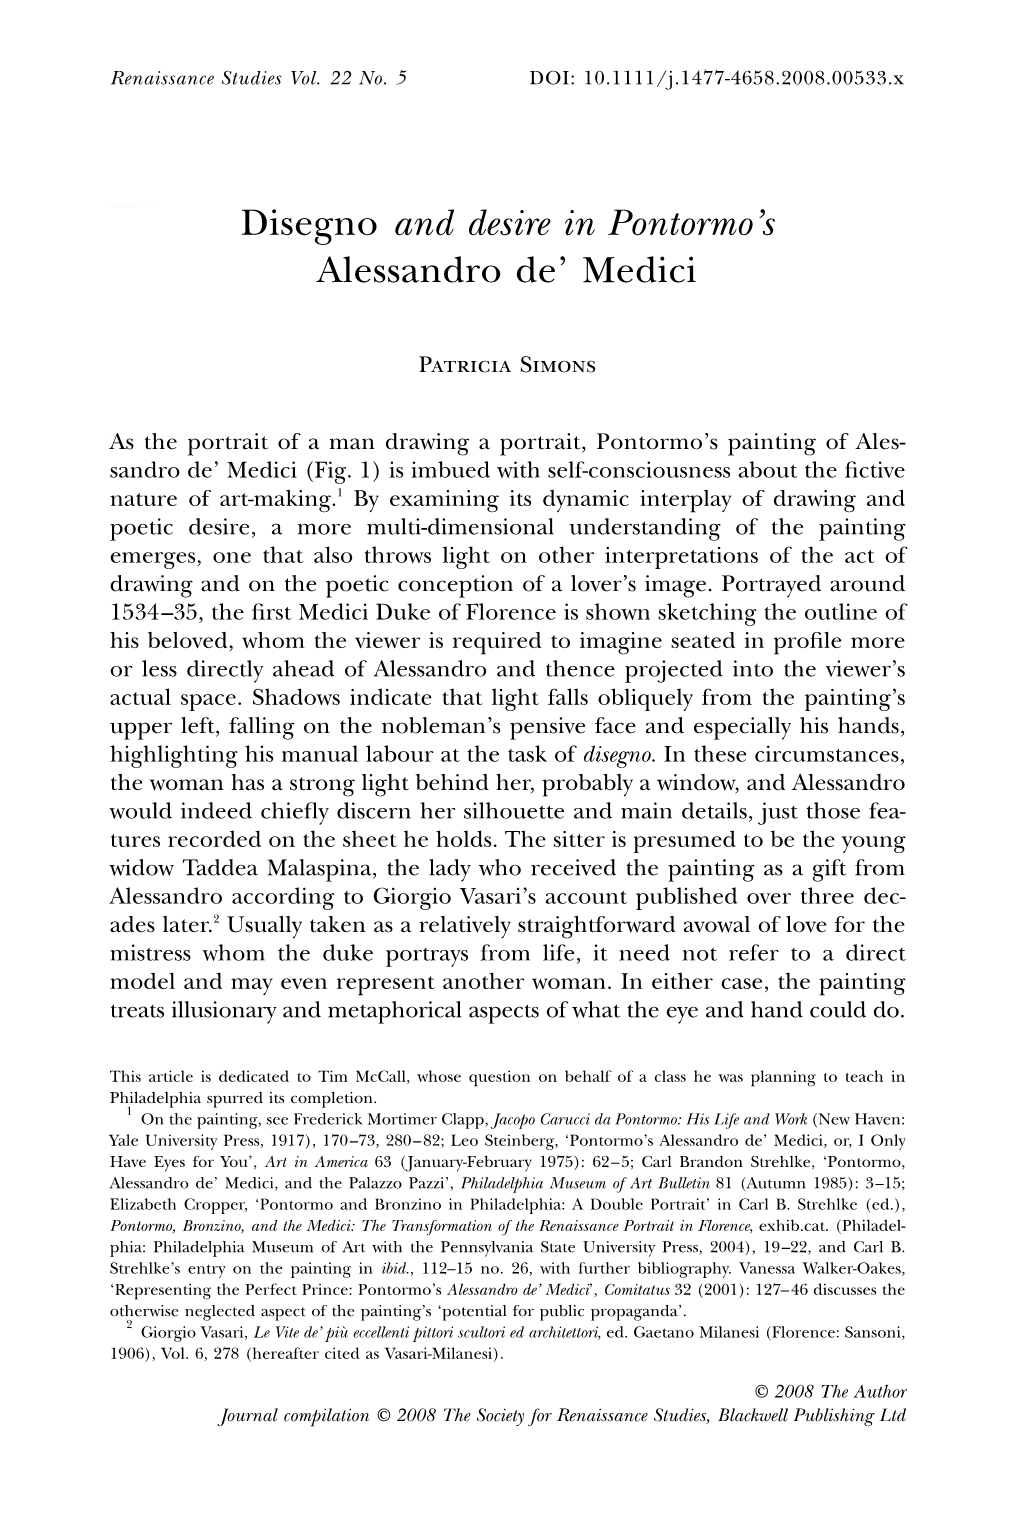 Disegno and Desire in Pontormo's Alessandro De' Medici